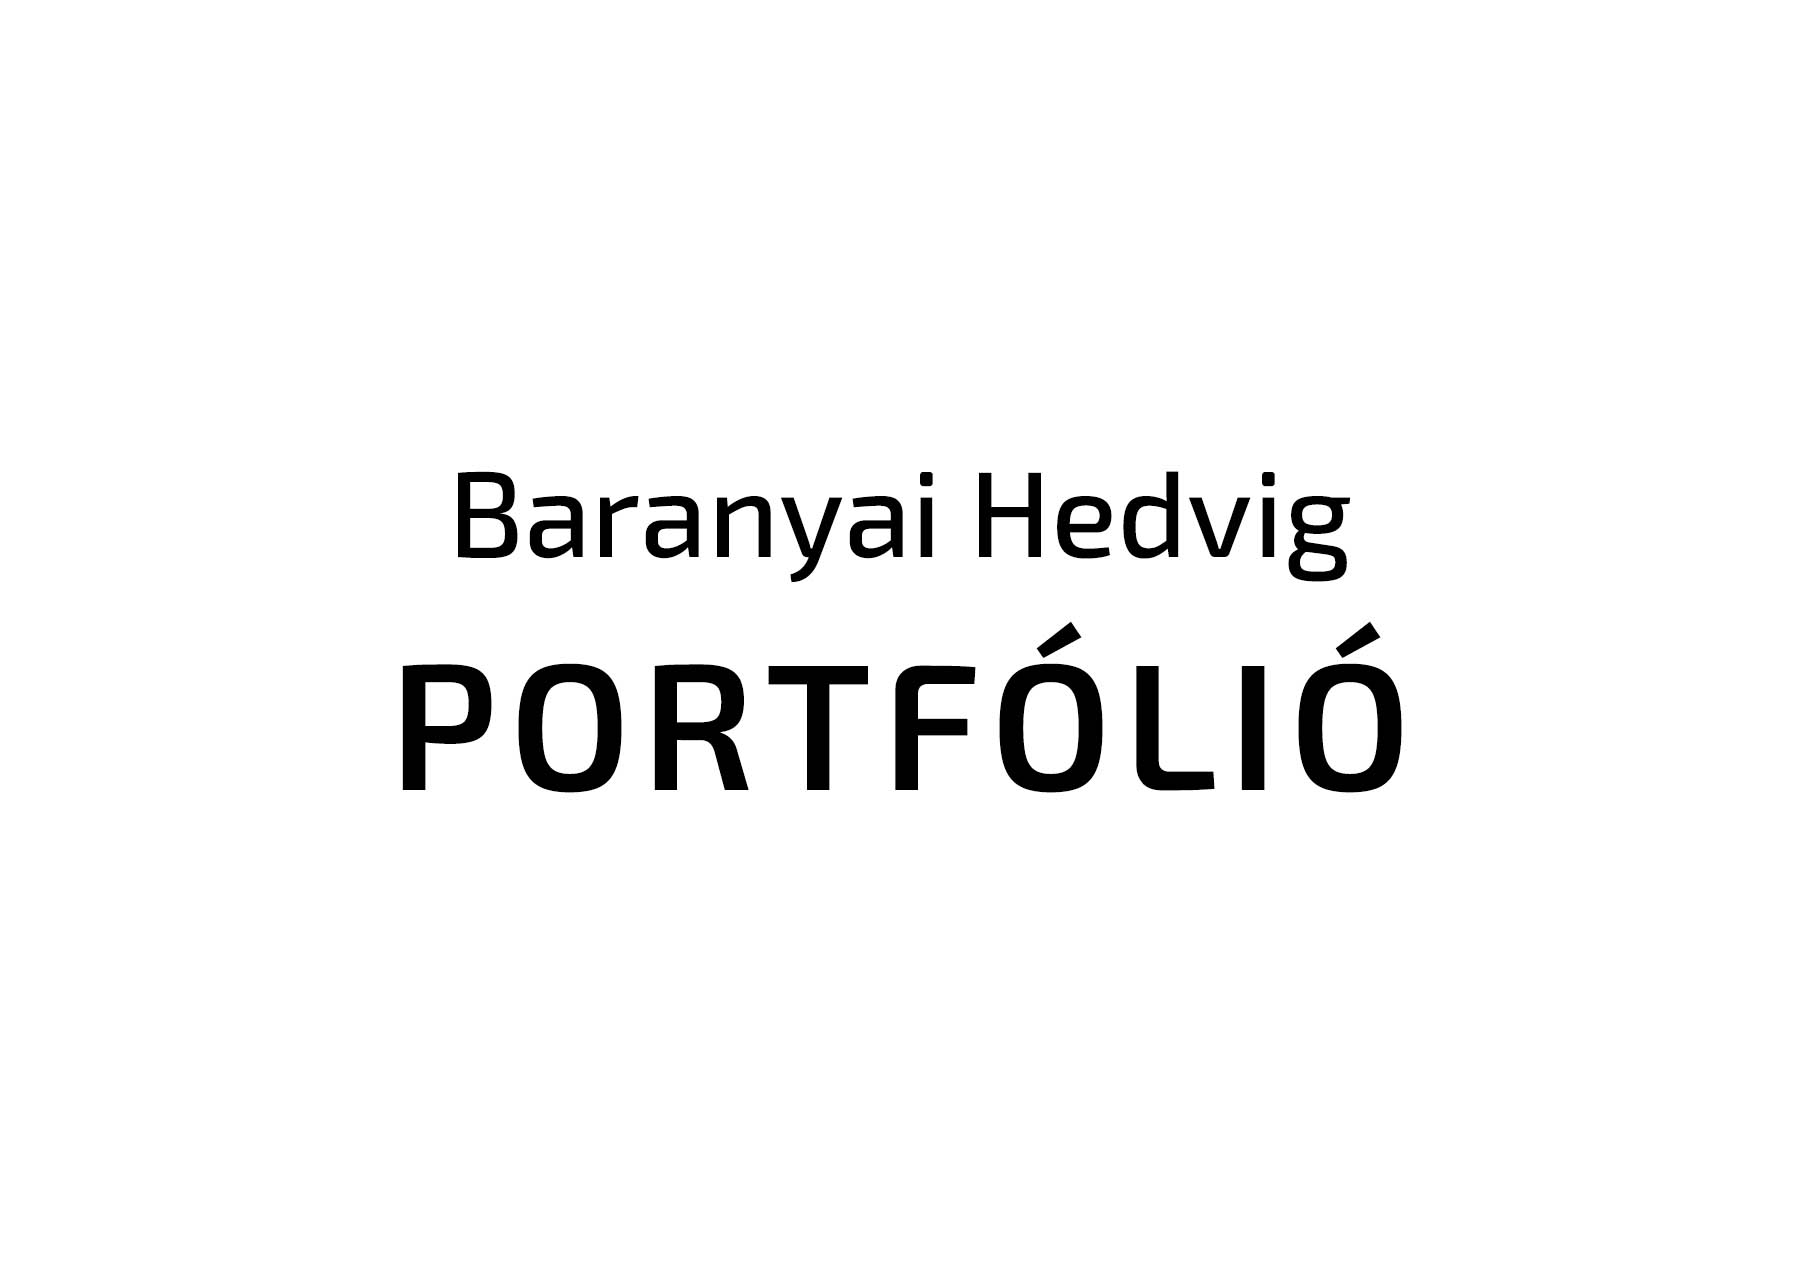 Baranyai Hedvig  grafikus képzés végén leadott portfólió 